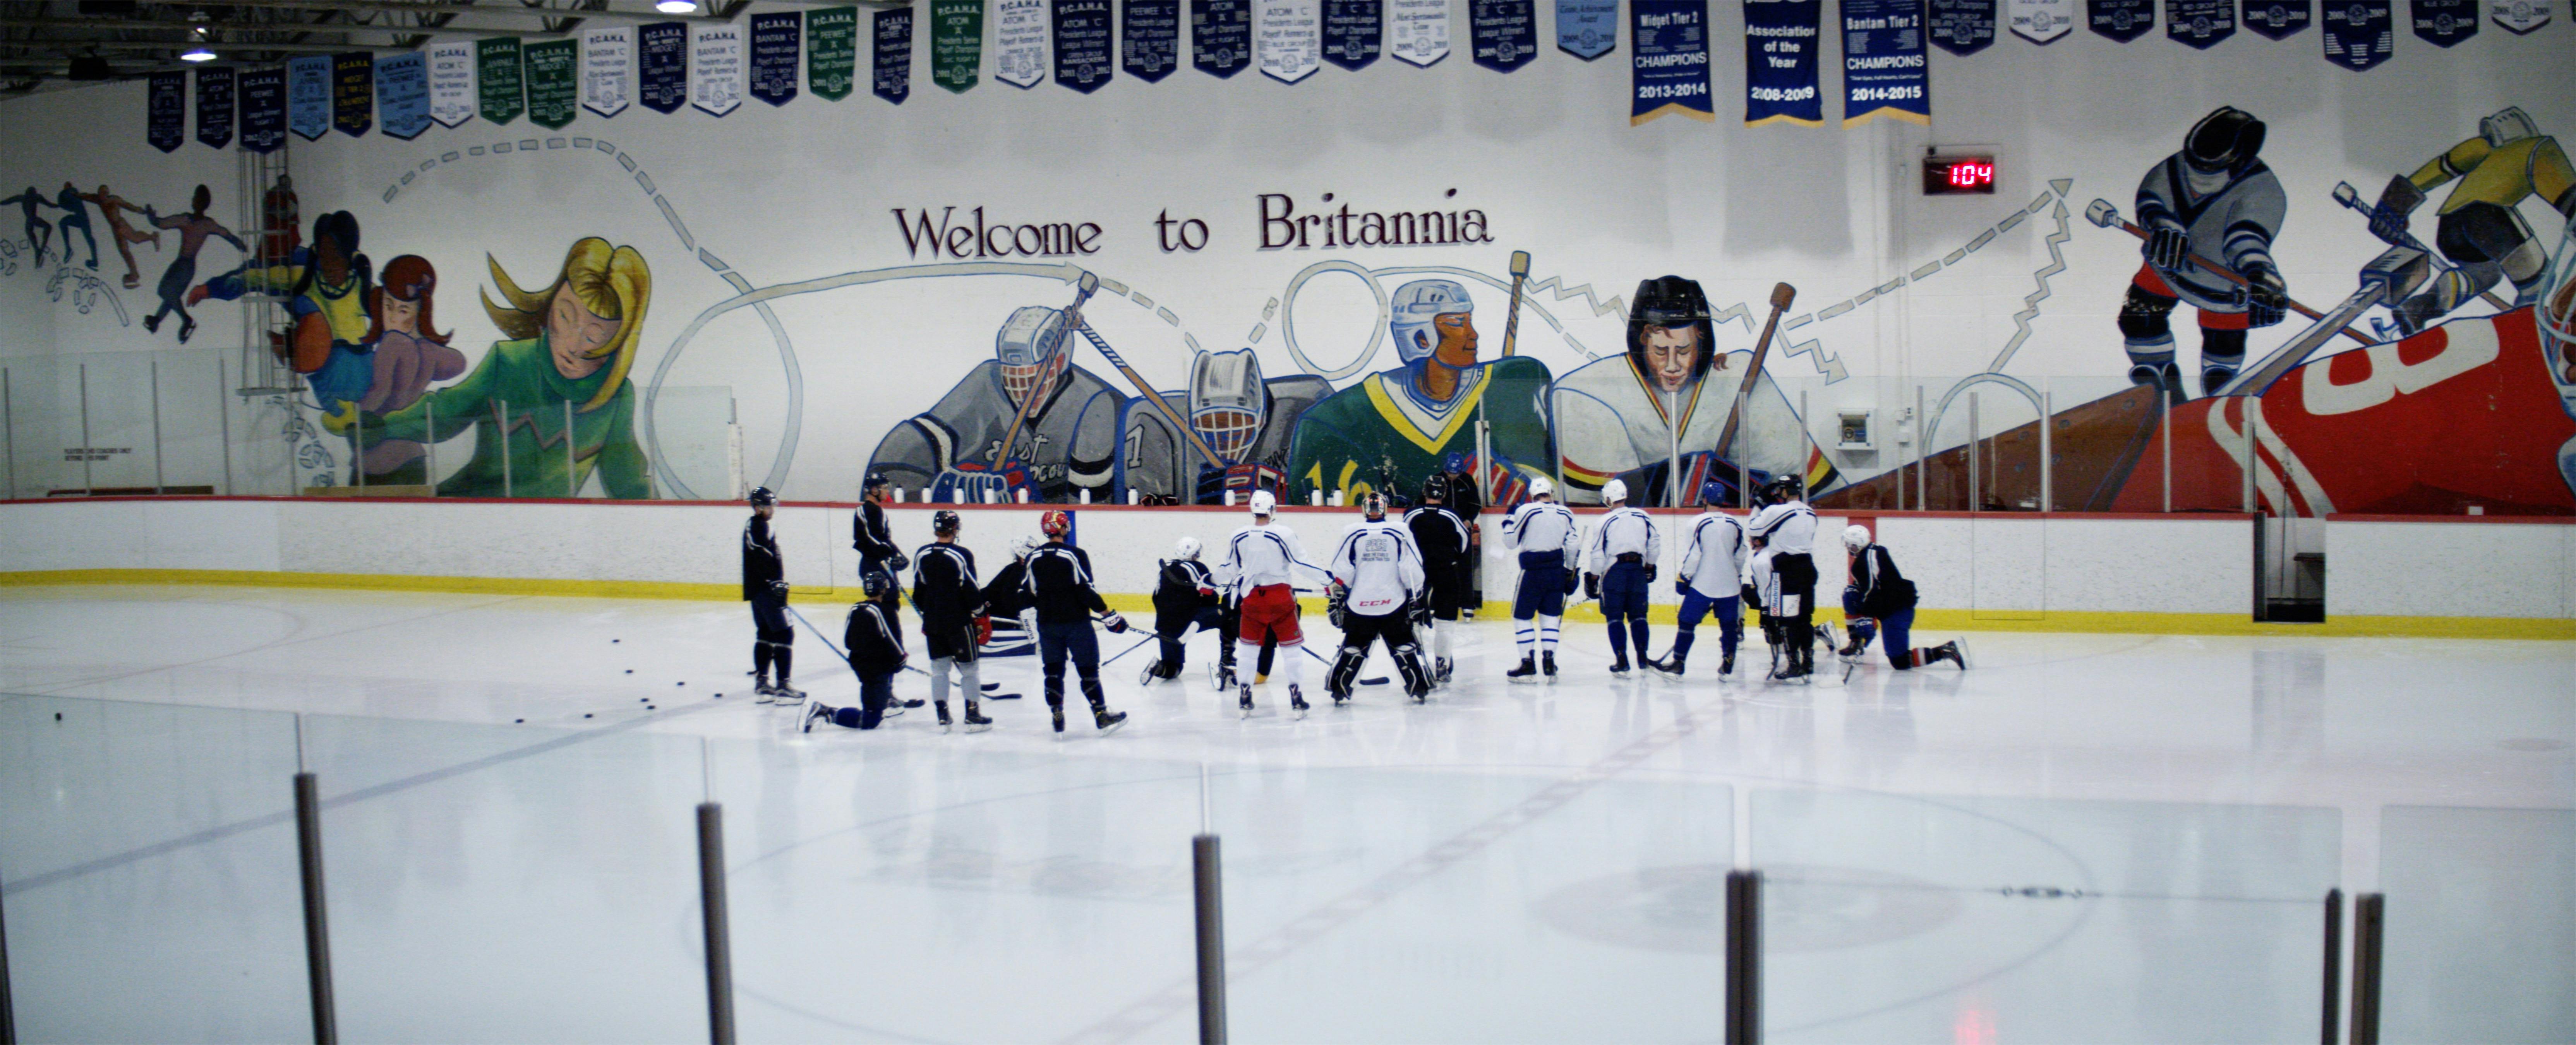 Hockey team huddle on ice rink